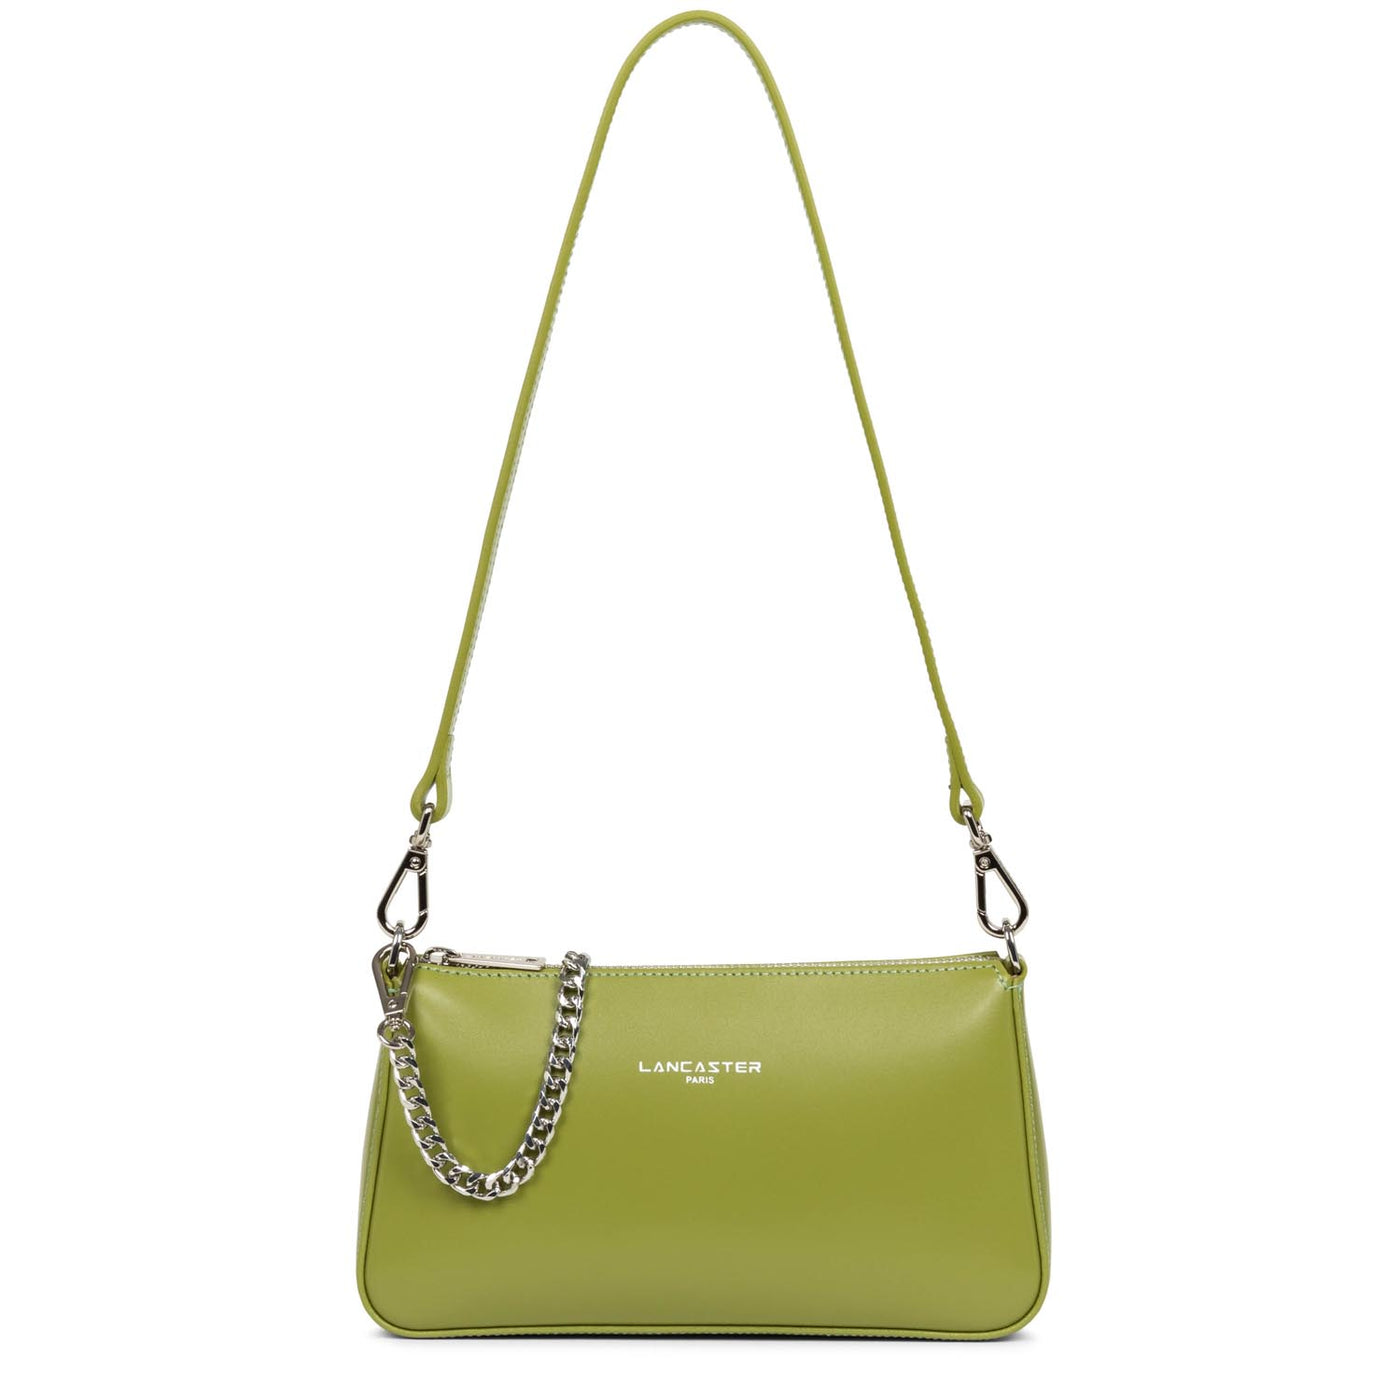 petit sac trotteur - suave even #couleur_olive